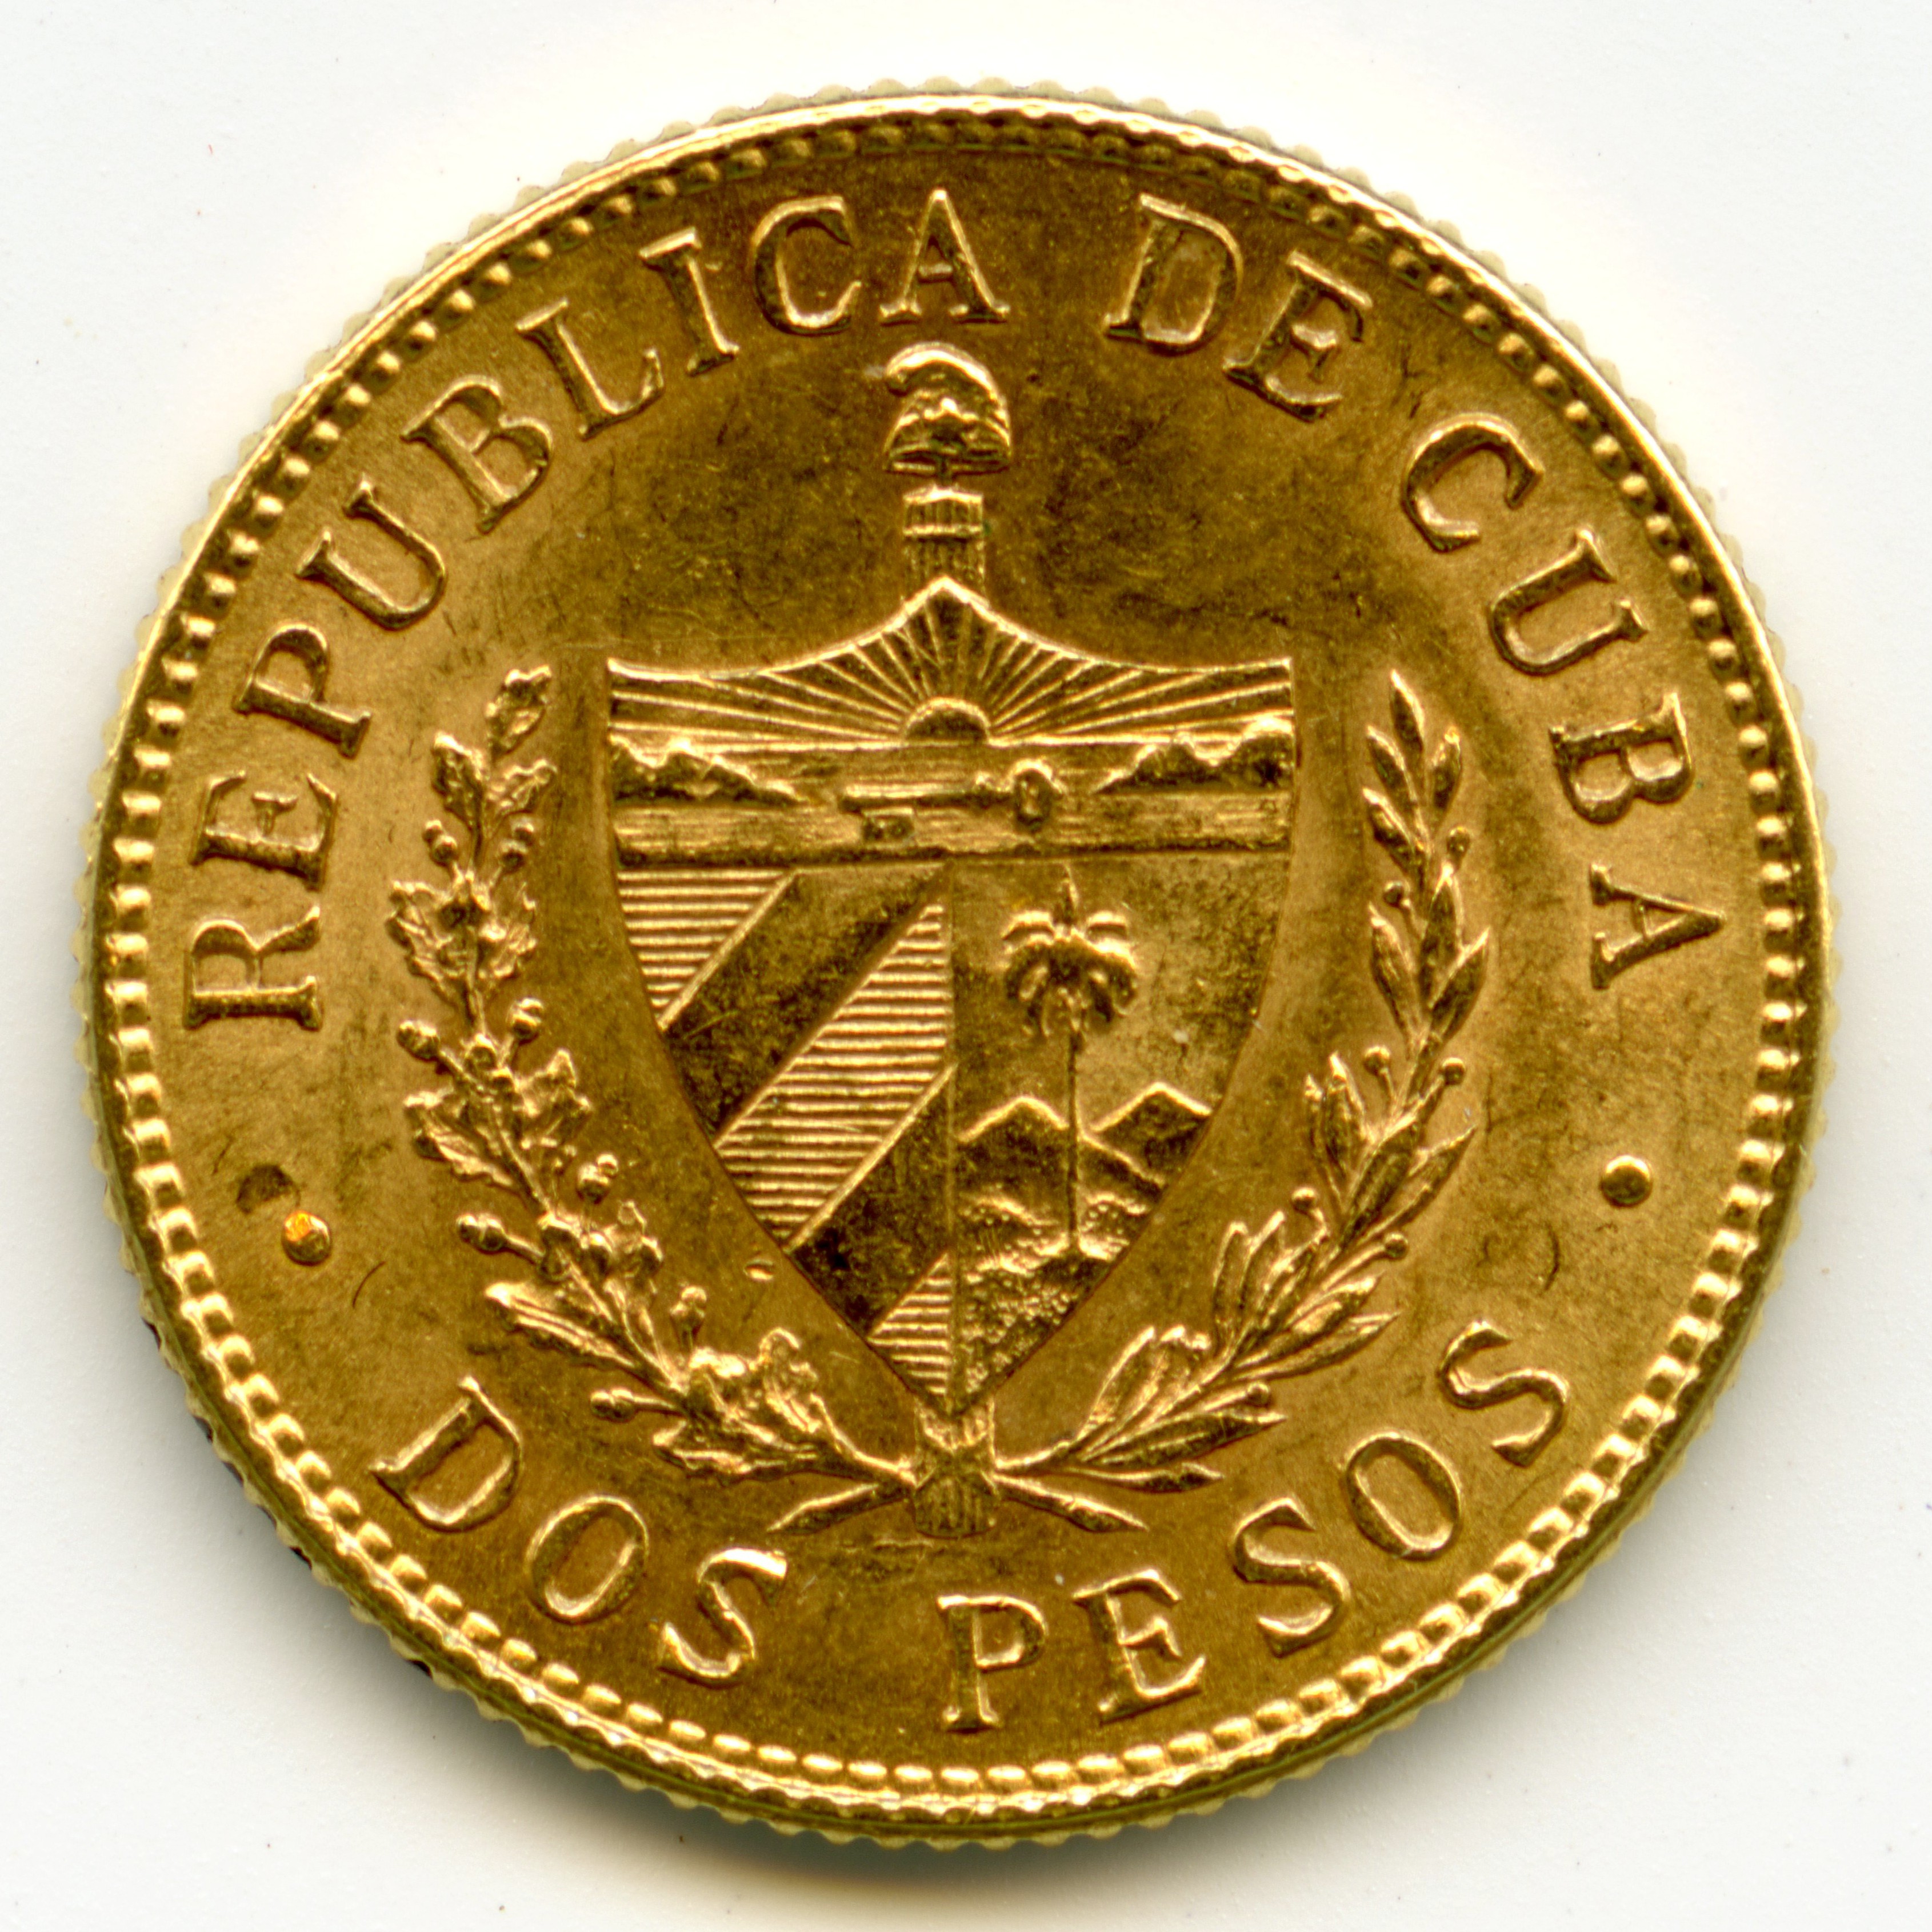 Cuba - 2 Pesos - 1915 revers